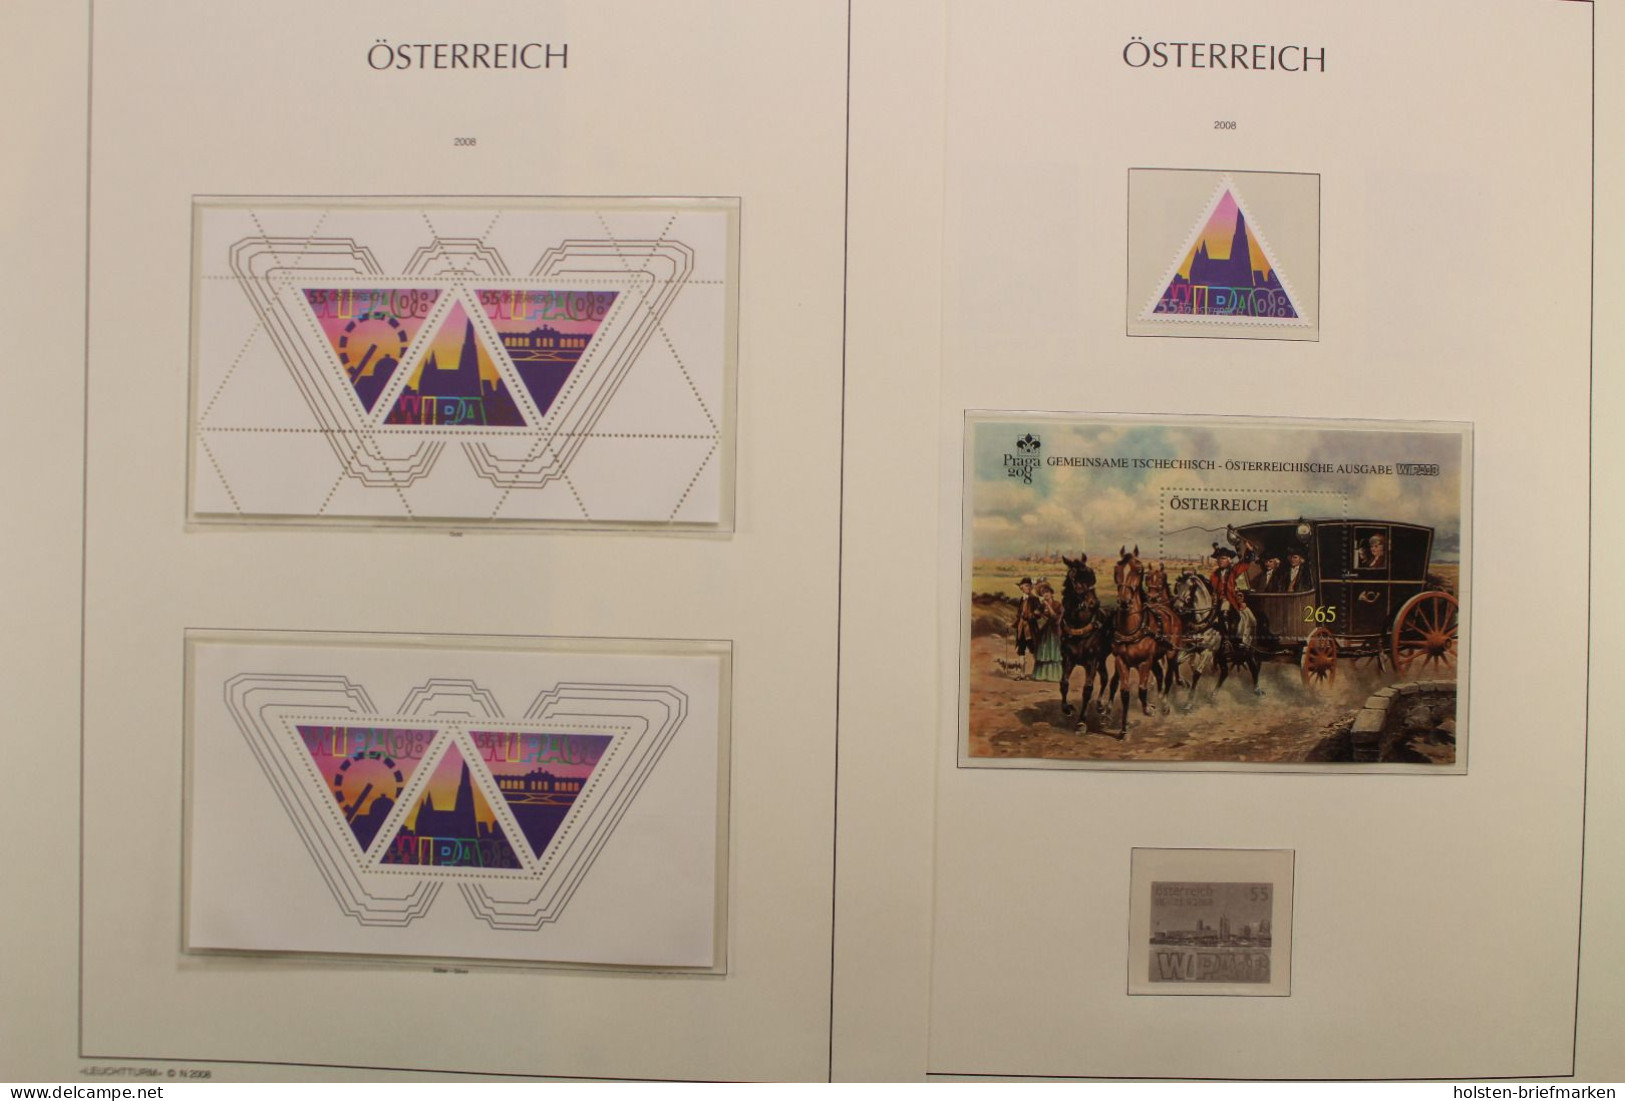 Österreich 2005-2009, postfrische Sammlung auf Leuchtturm Vordrucken